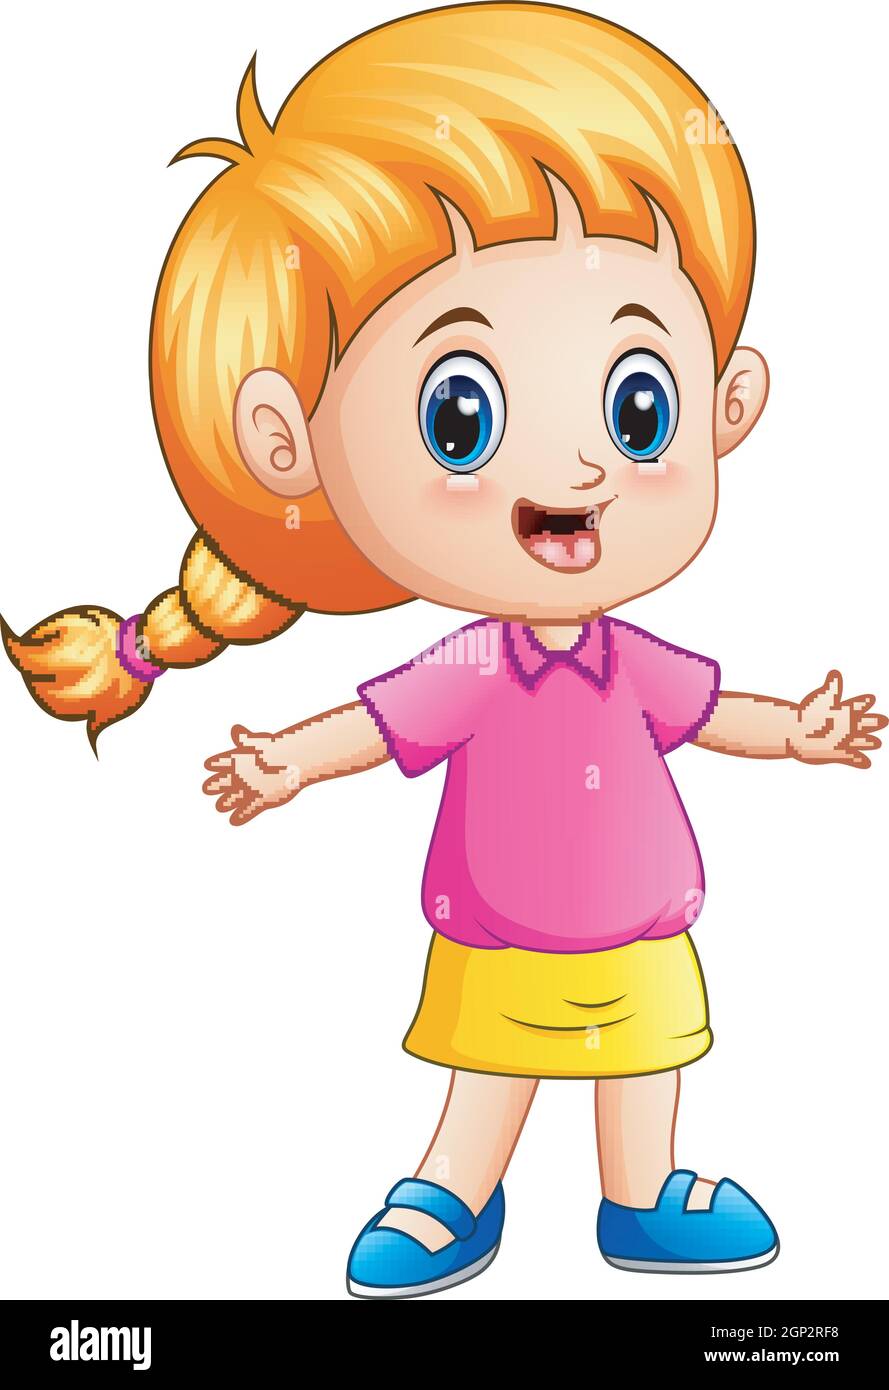 Little girl cartoon with blond hair Stock Vector